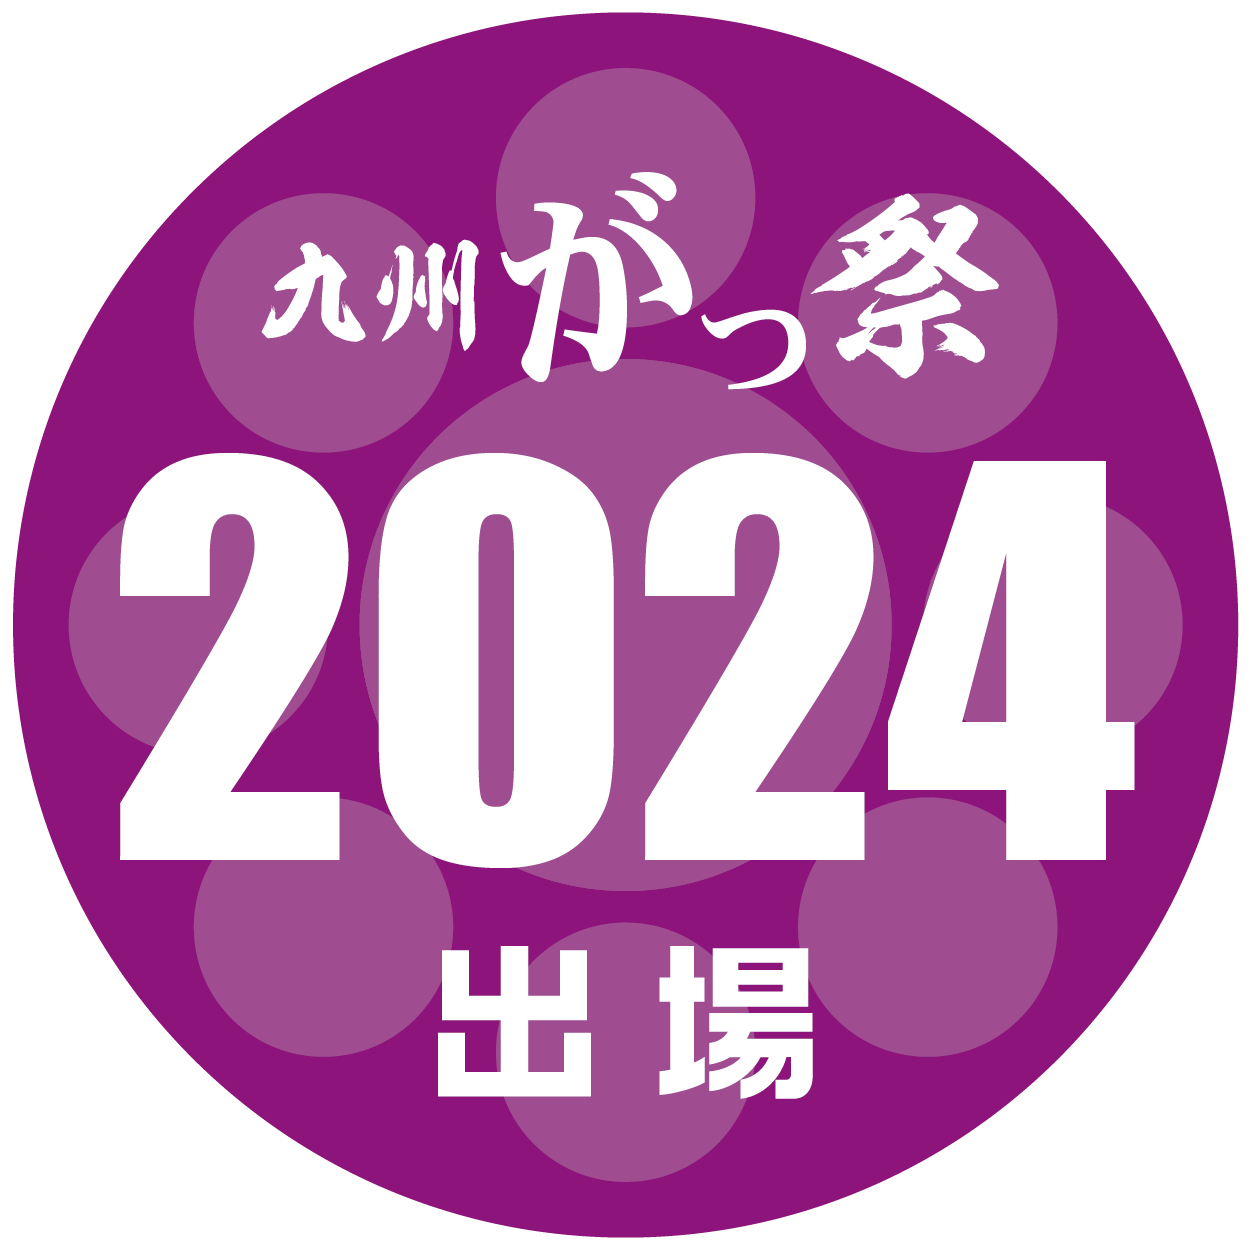 2024出場ロゴ